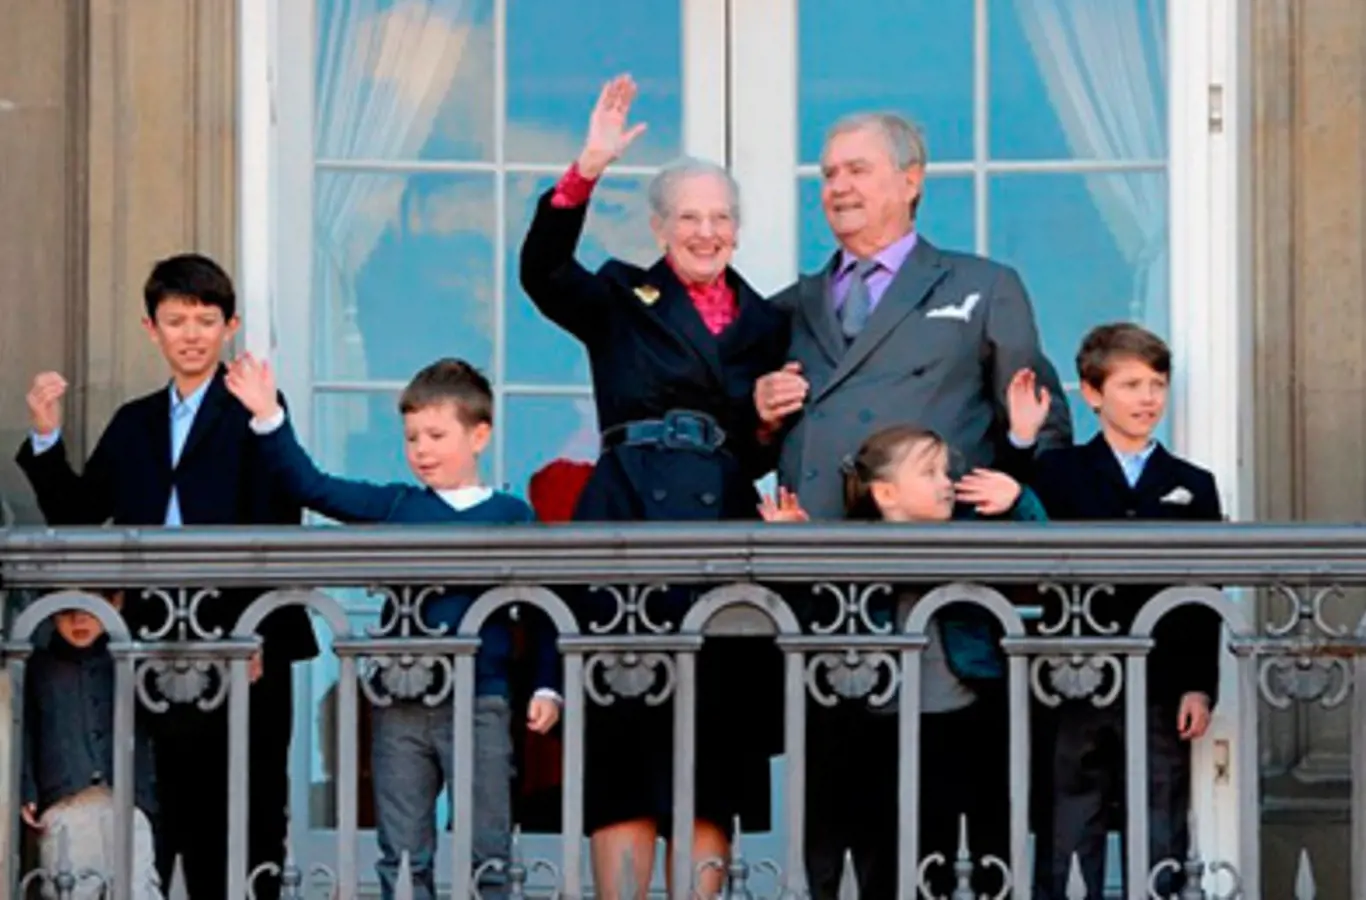 Regentparret med børnebørnene Prins Christian, Prinsesse Isabella, Prins Nikolai, Prins Felix og Prins Henrik den 16. april 2012.